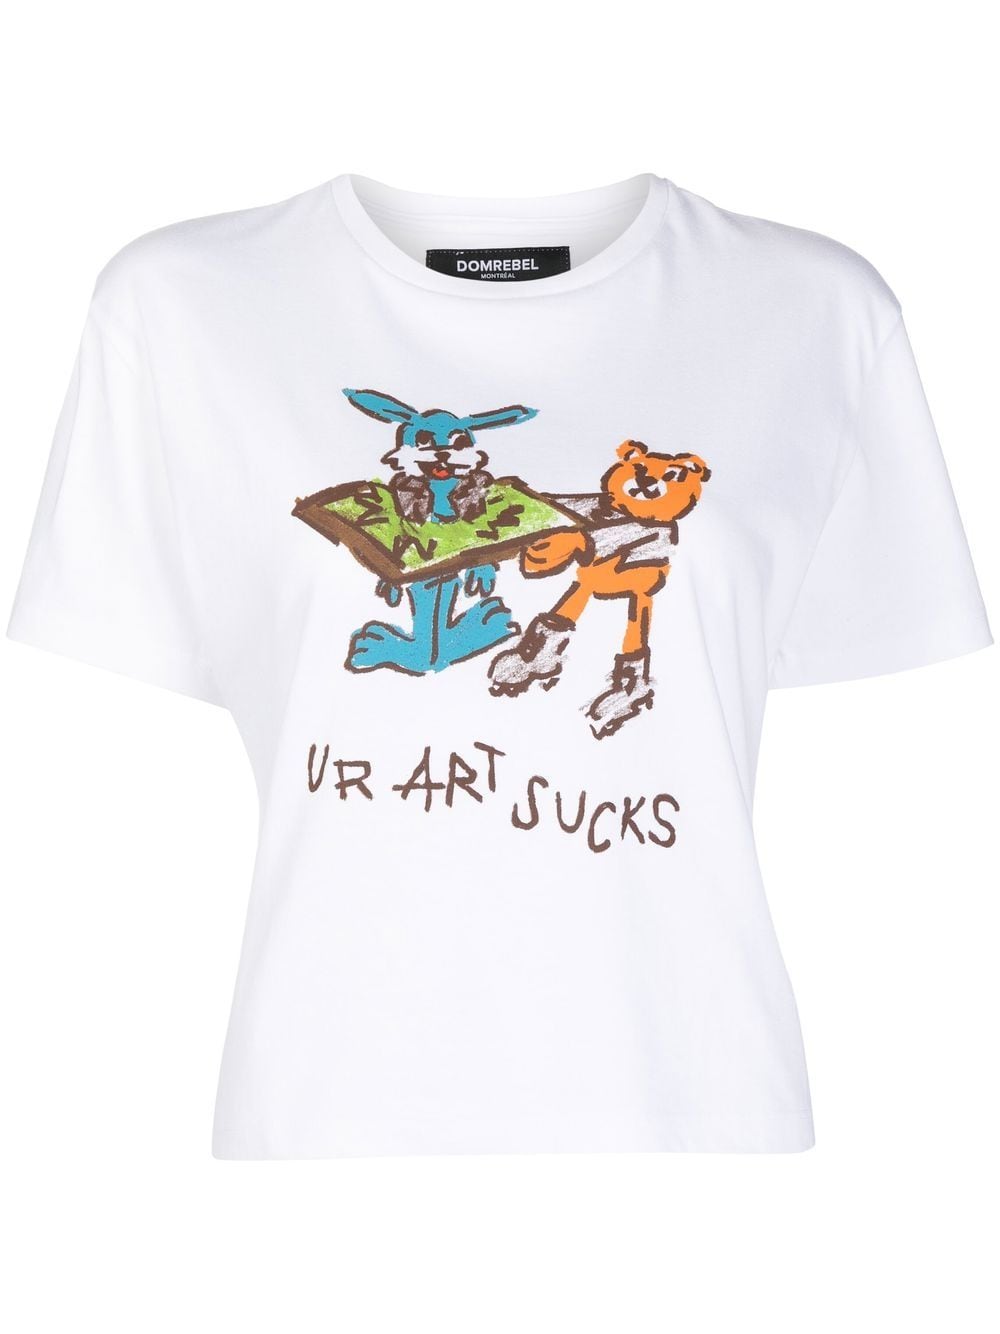 DOMREBEL T-Shirt mit Ur Art Sucks-Print - Weiß von DOMREBEL